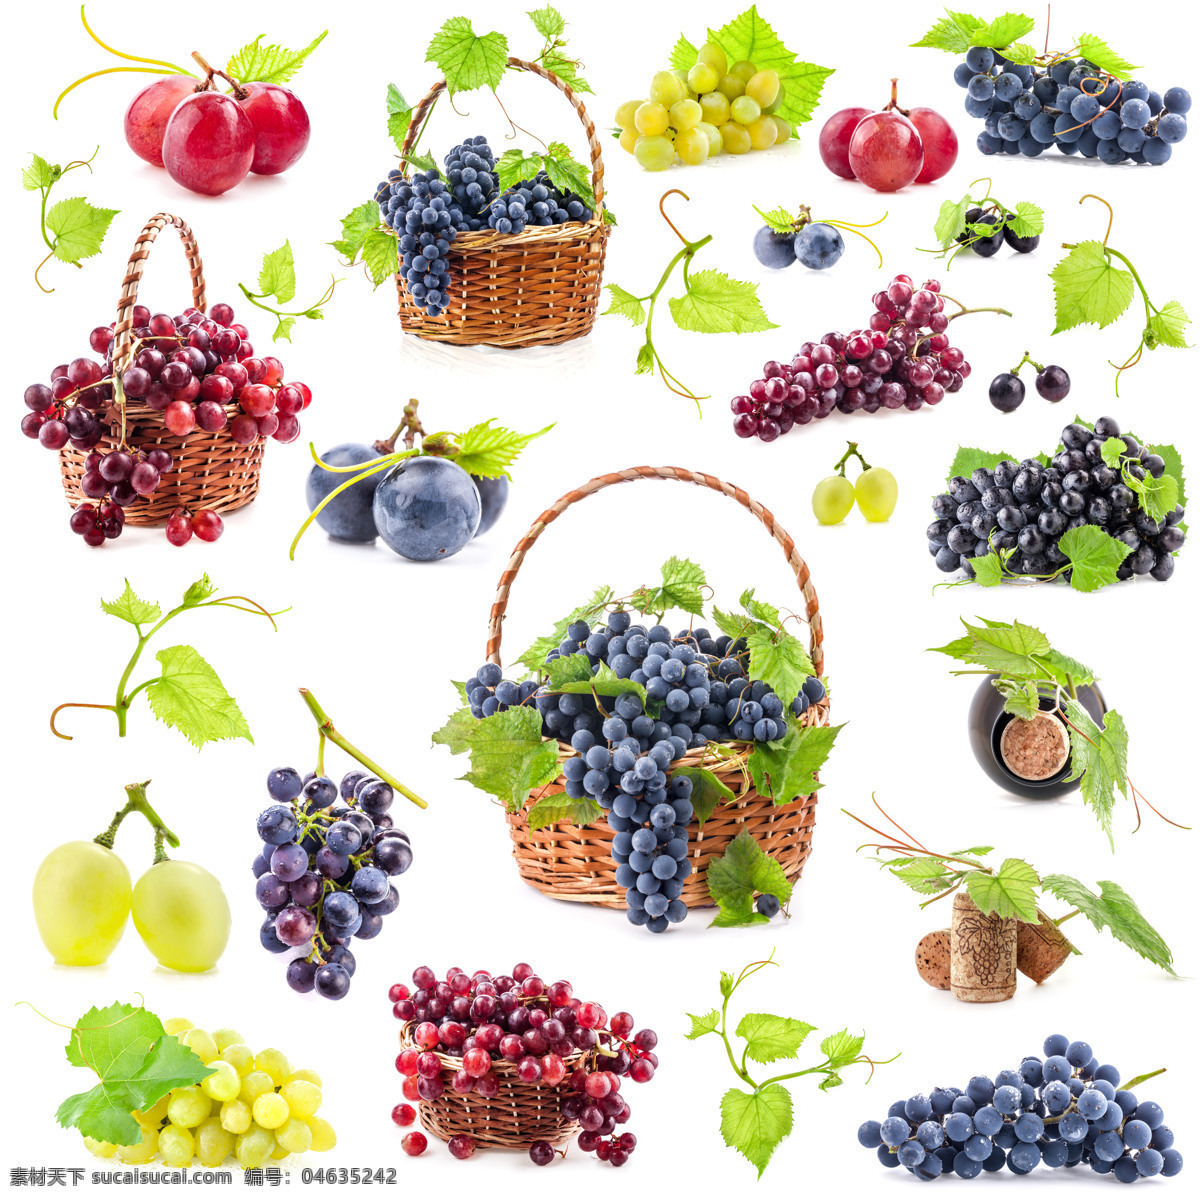 新鲜葡萄摄影 葡萄 红提 青葡萄 水果 水果摄影 新鲜水果 水果广告 食物 水果蔬菜 餐饮美食 白色